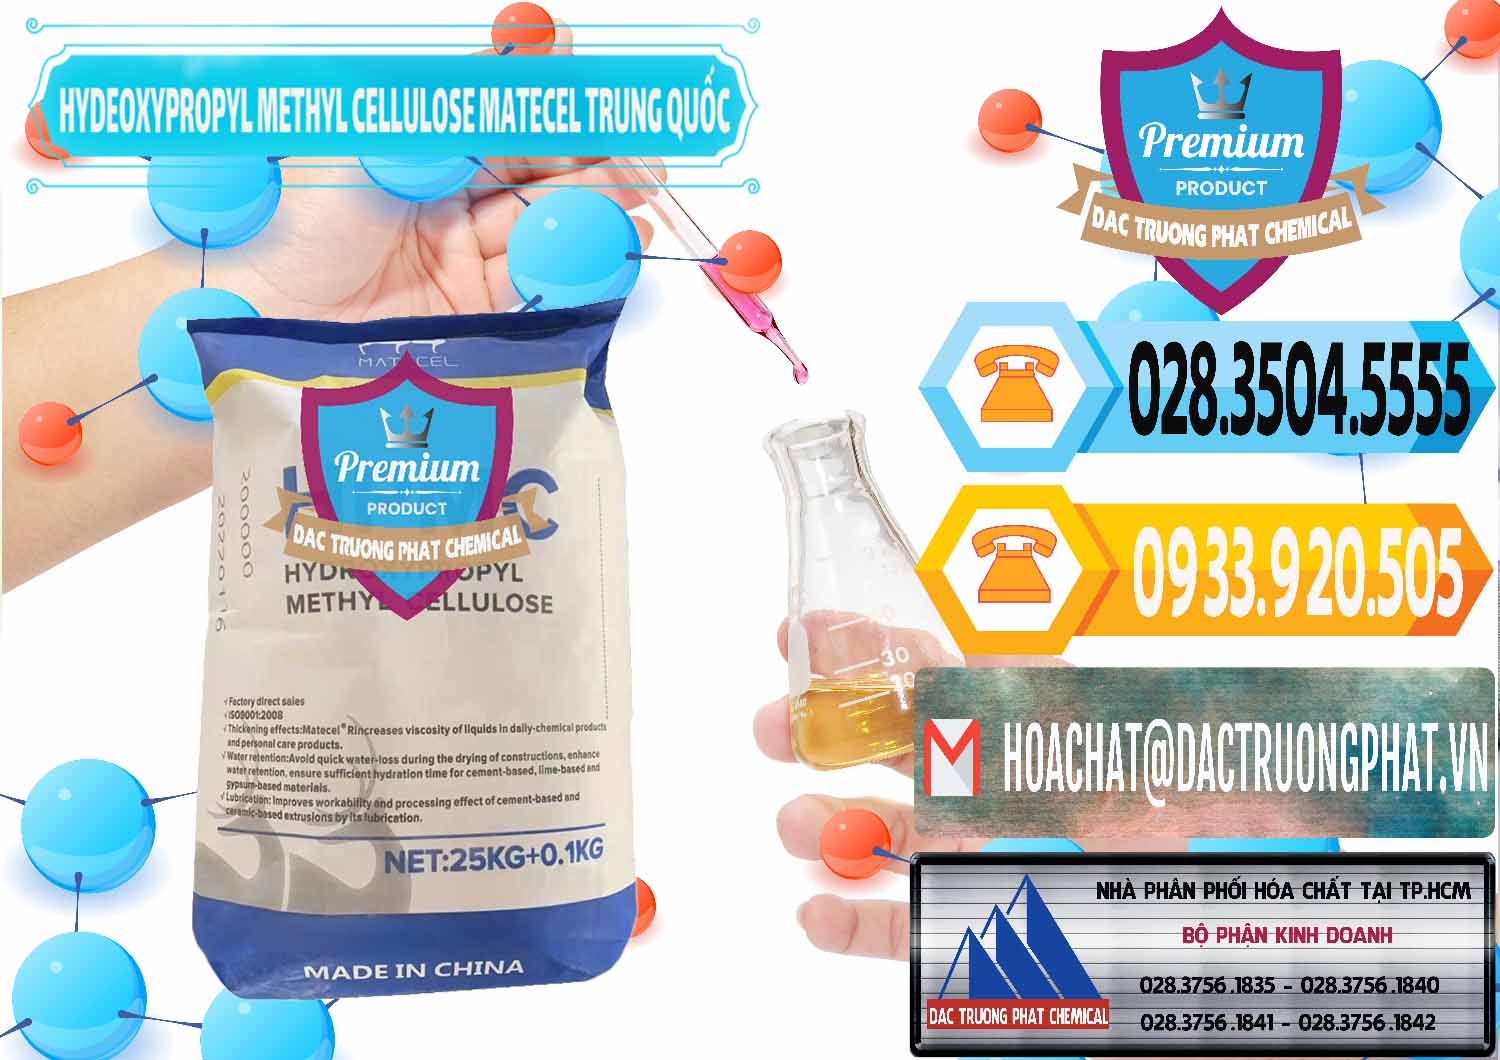 Công ty chuyên cung ứng ( bán ) Chất Tạo Đặc HPMC - Hydroxypropyl Methyl Cellulose Matecel Trung Quốc China - 0396 - Phân phối và bán hóa chất tại TP.HCM - hoachattayrua.net